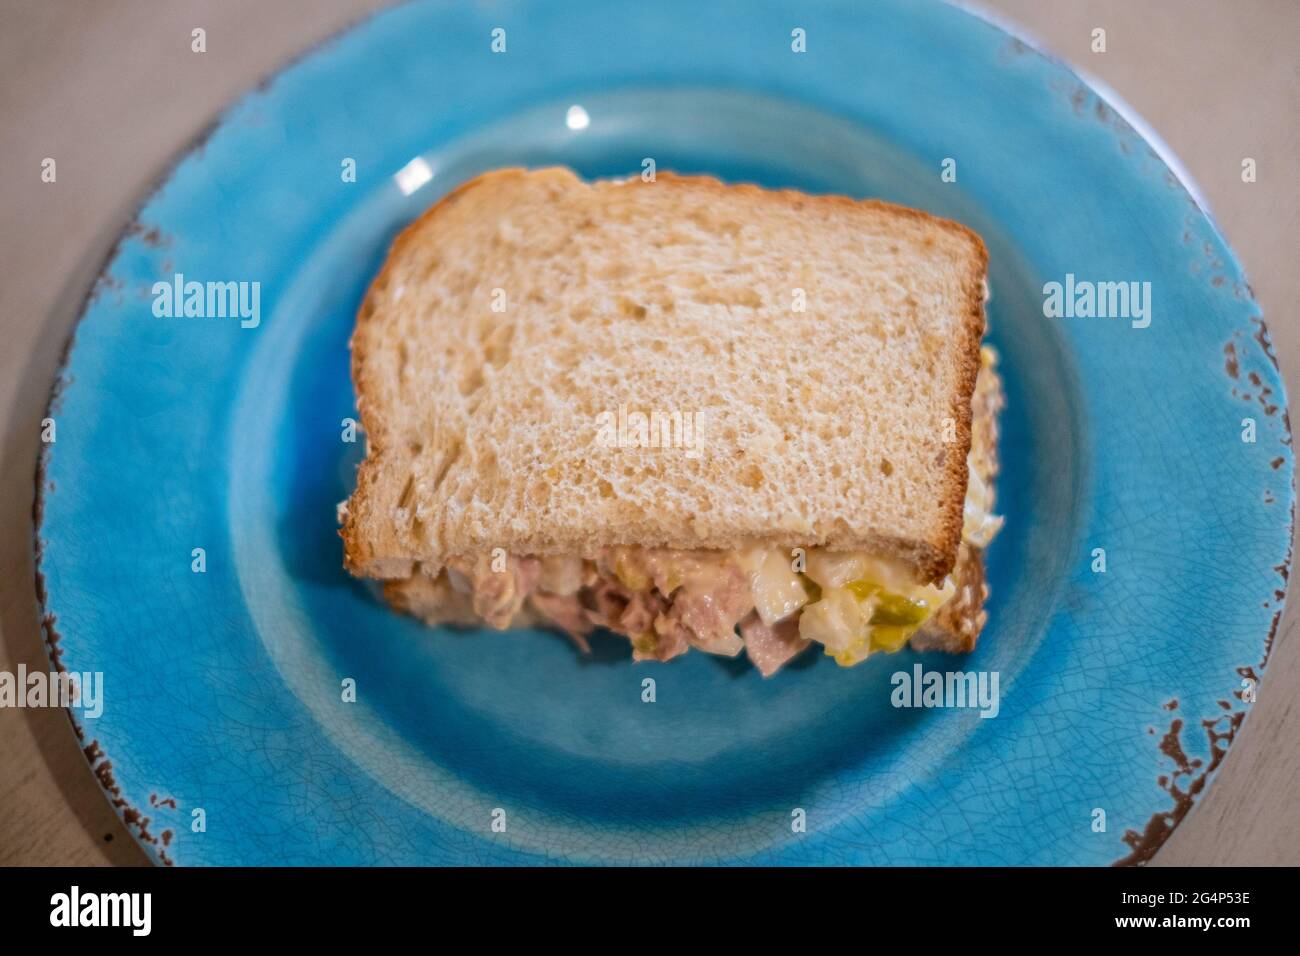 La moitié d'un sandwich de thon avec du pain d'avoine sur une assiette bleue. Gros plan. Banque D'Images